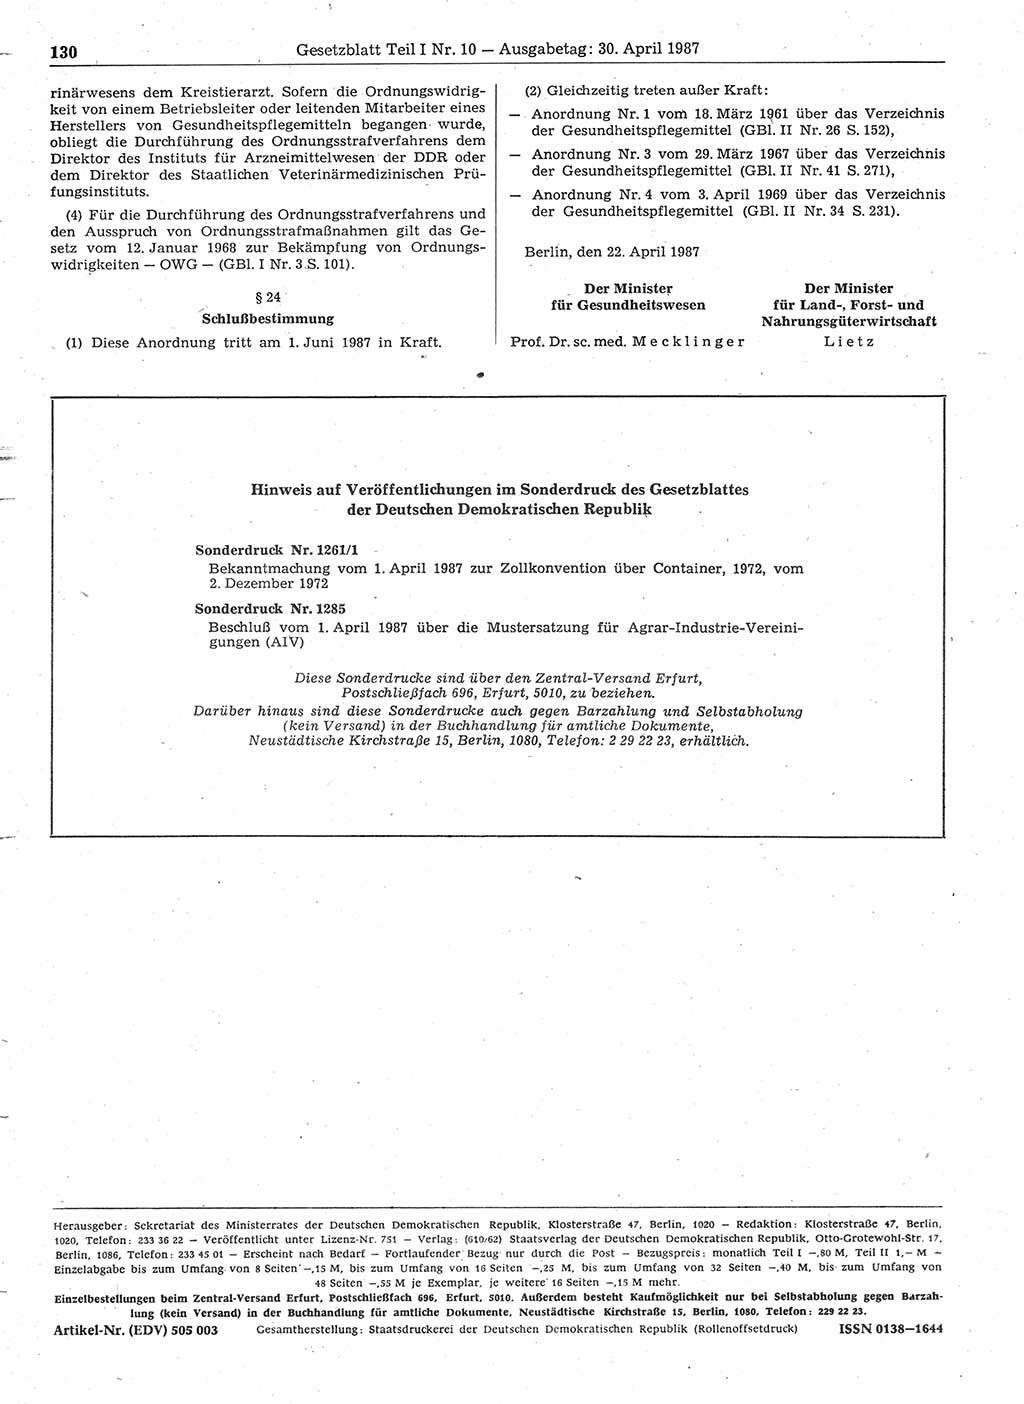 Gesetzblatt (GBl.) der Deutschen Demokratischen Republik (DDR) Teil Ⅰ 1987, Seite 130 (GBl. DDR Ⅰ 1987, S. 130)